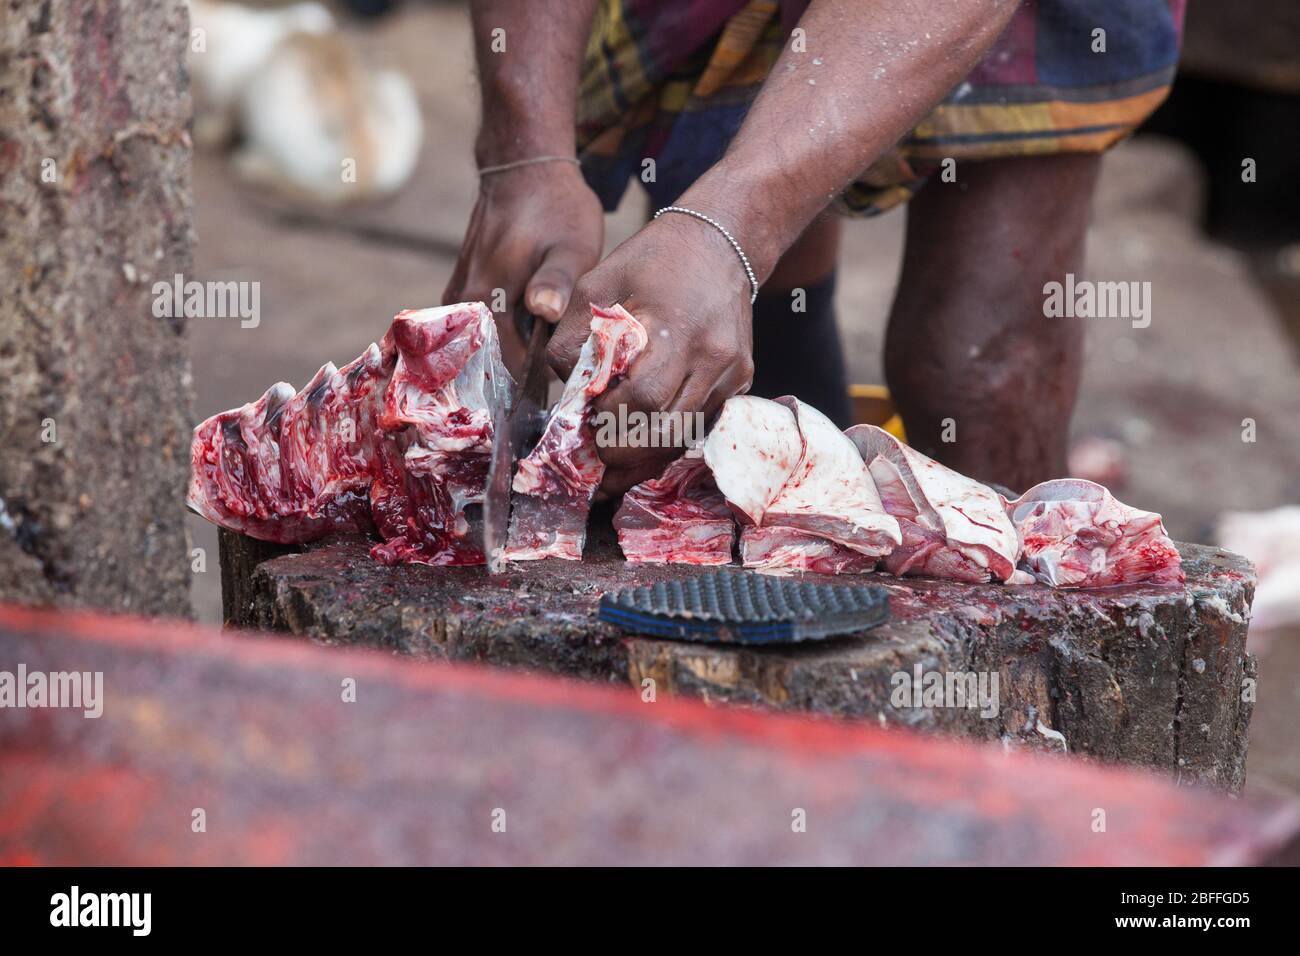 Hände mit Messer hacken Fische im Freien. Ein Fischer und Fischverkäufer verfolgt einen großen Fisch auf einem Holzstamm in Scheiben geschnitten. Fischmarkt in Negombo, Sri Lank Stockfoto